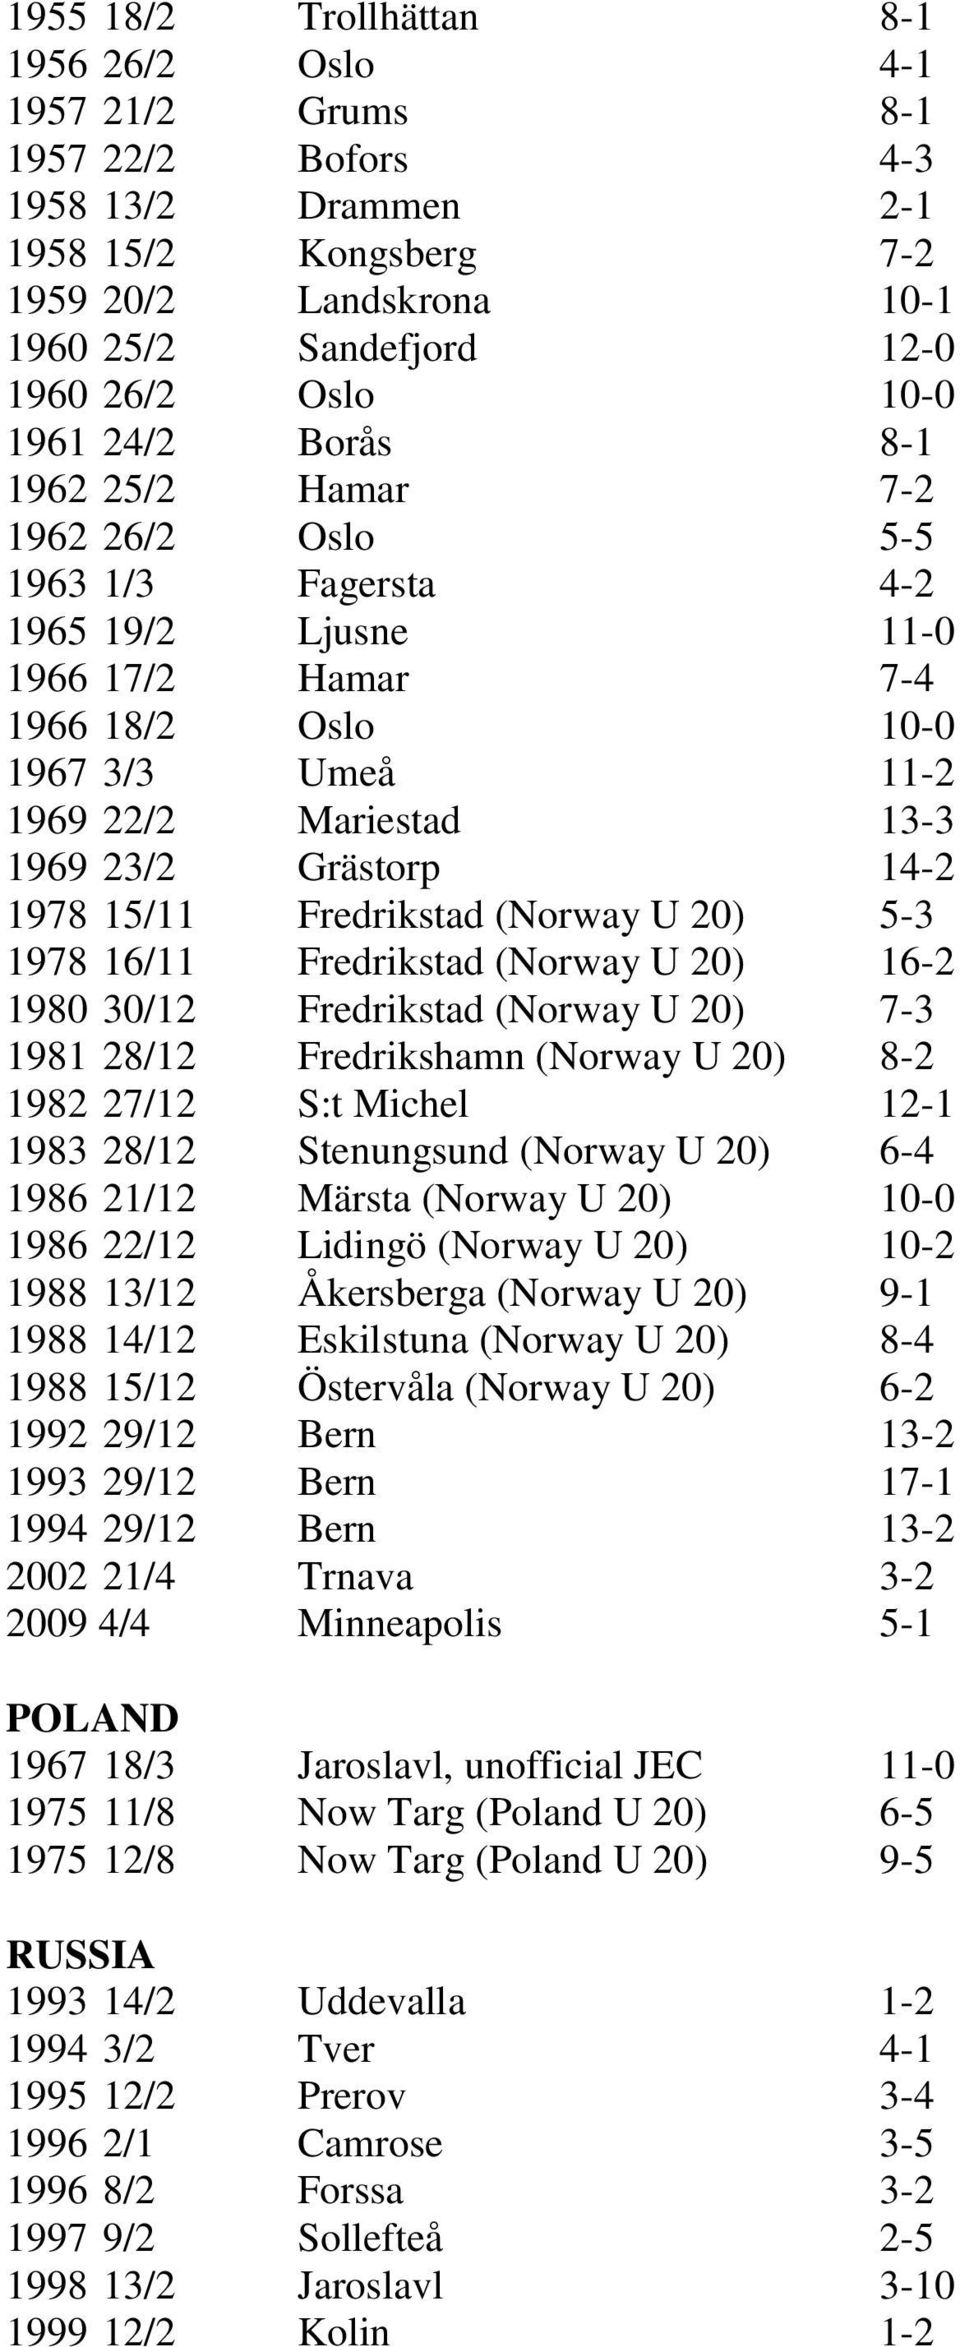 23/2 Grästorp 14-2 1978 15/11 Fredrikstad (Norway U 20) 5-3 1978 16/11 Fredrikstad (Norway U 20) 16-2 1980 30/12 Fredrikstad (Norway U 20) 7-3 1981 28/12 Fredrikshamn (Norway U 20) 8-2 1982 27/12 S:t